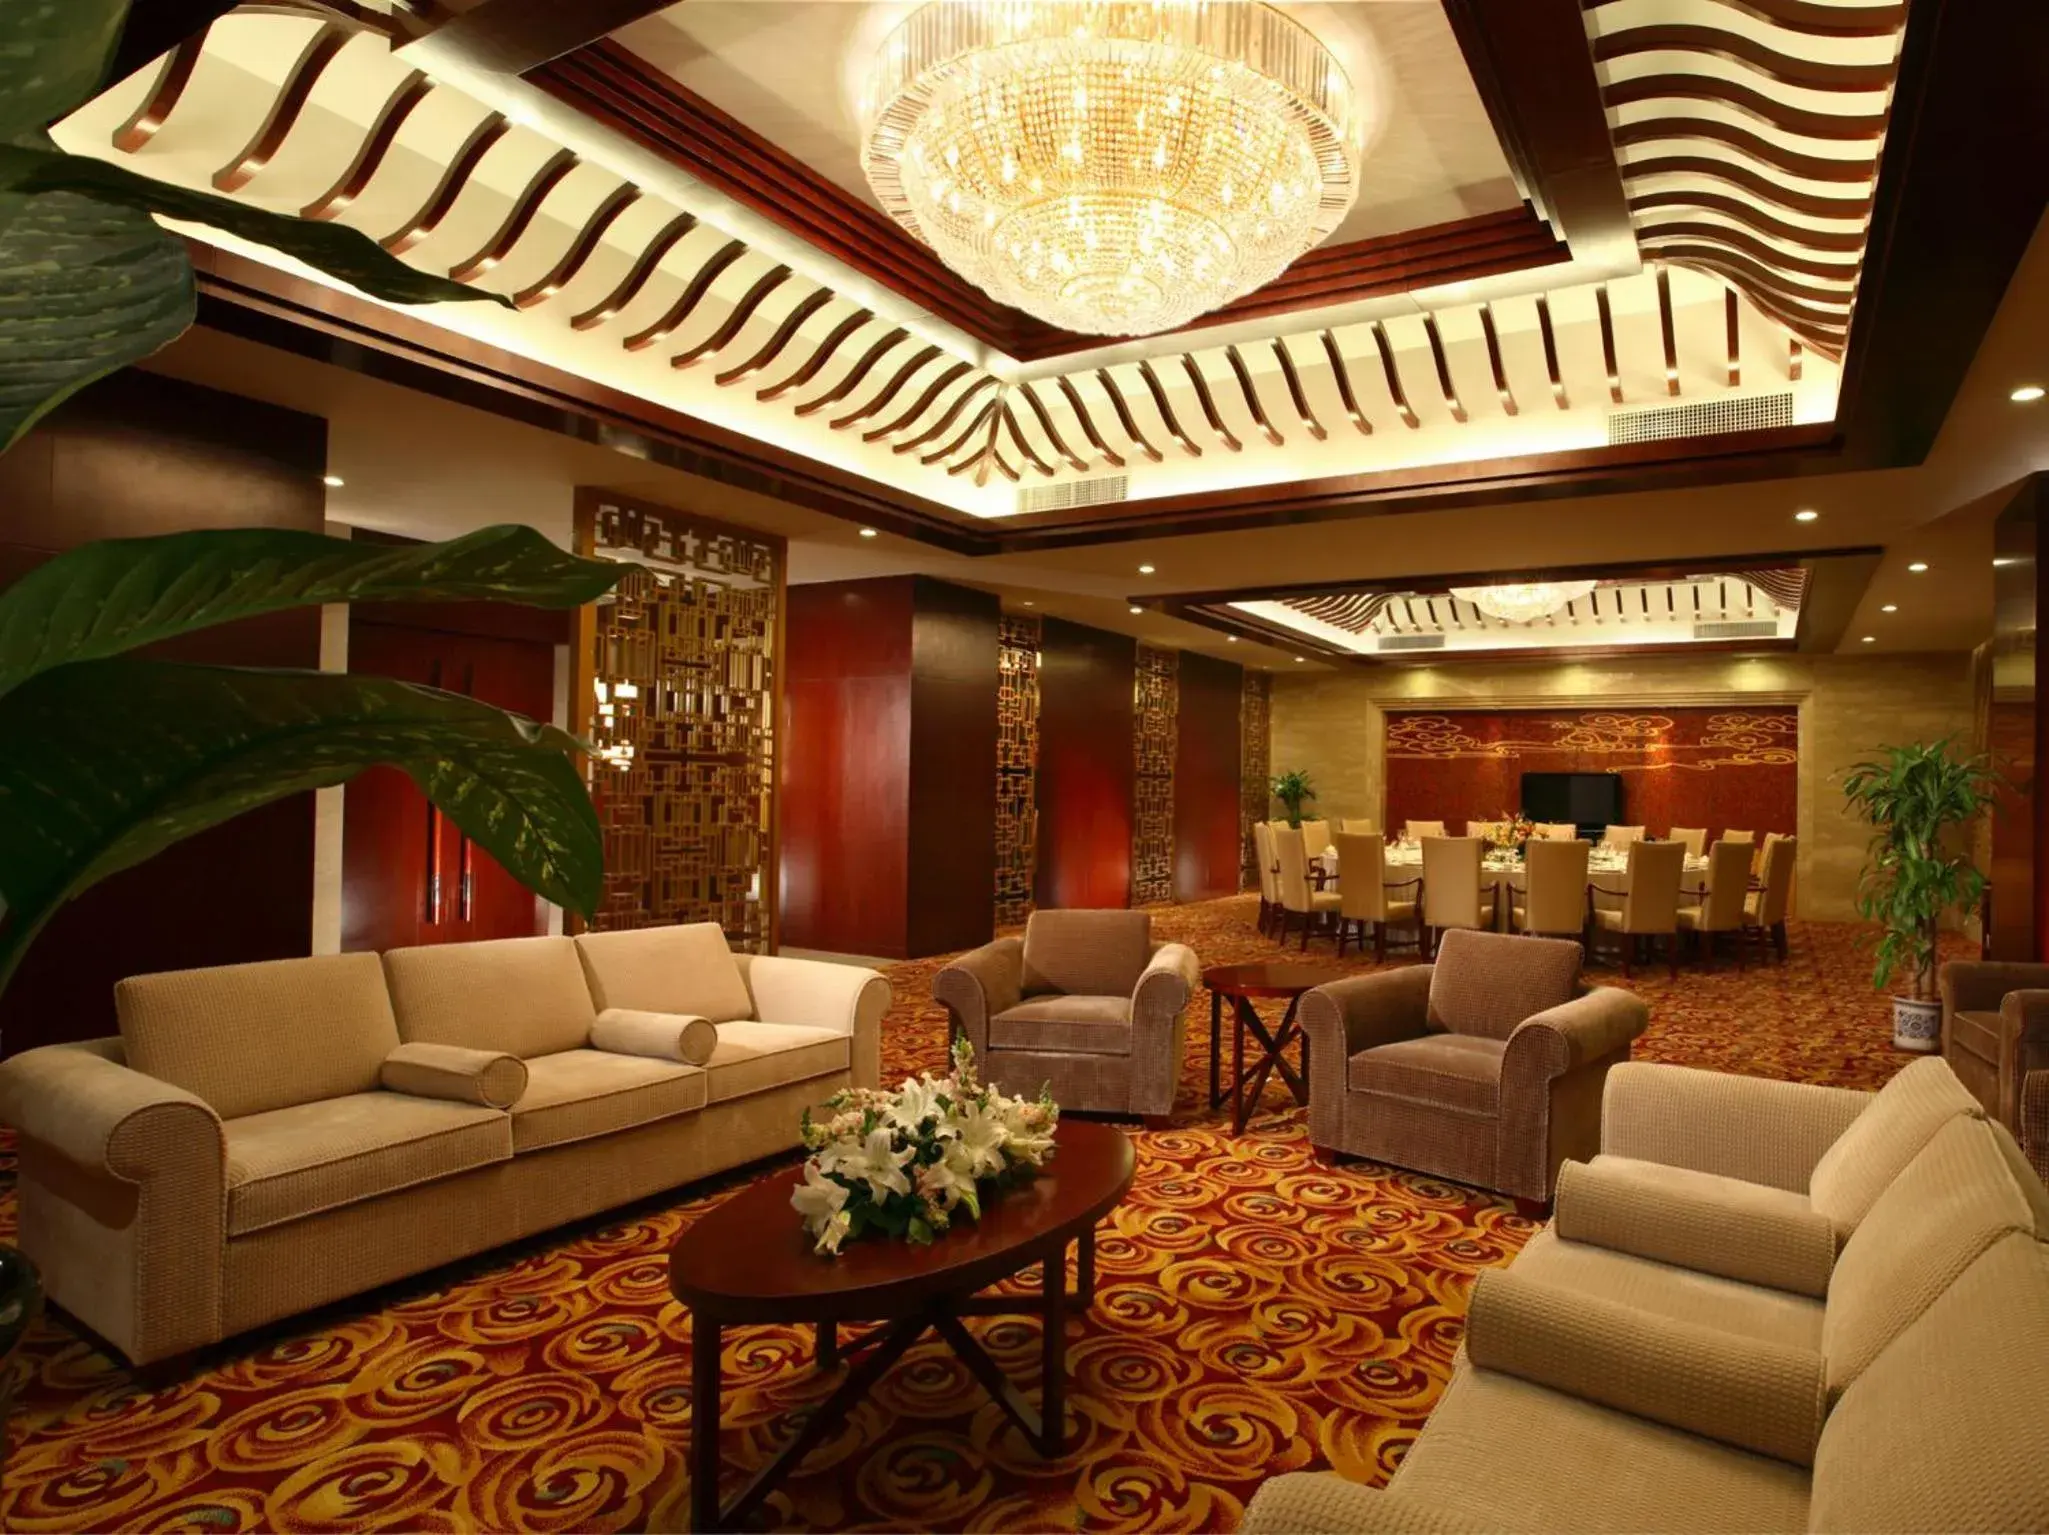 Decorative detail, Lounge/Bar in Tianjin Saixiang Hotel